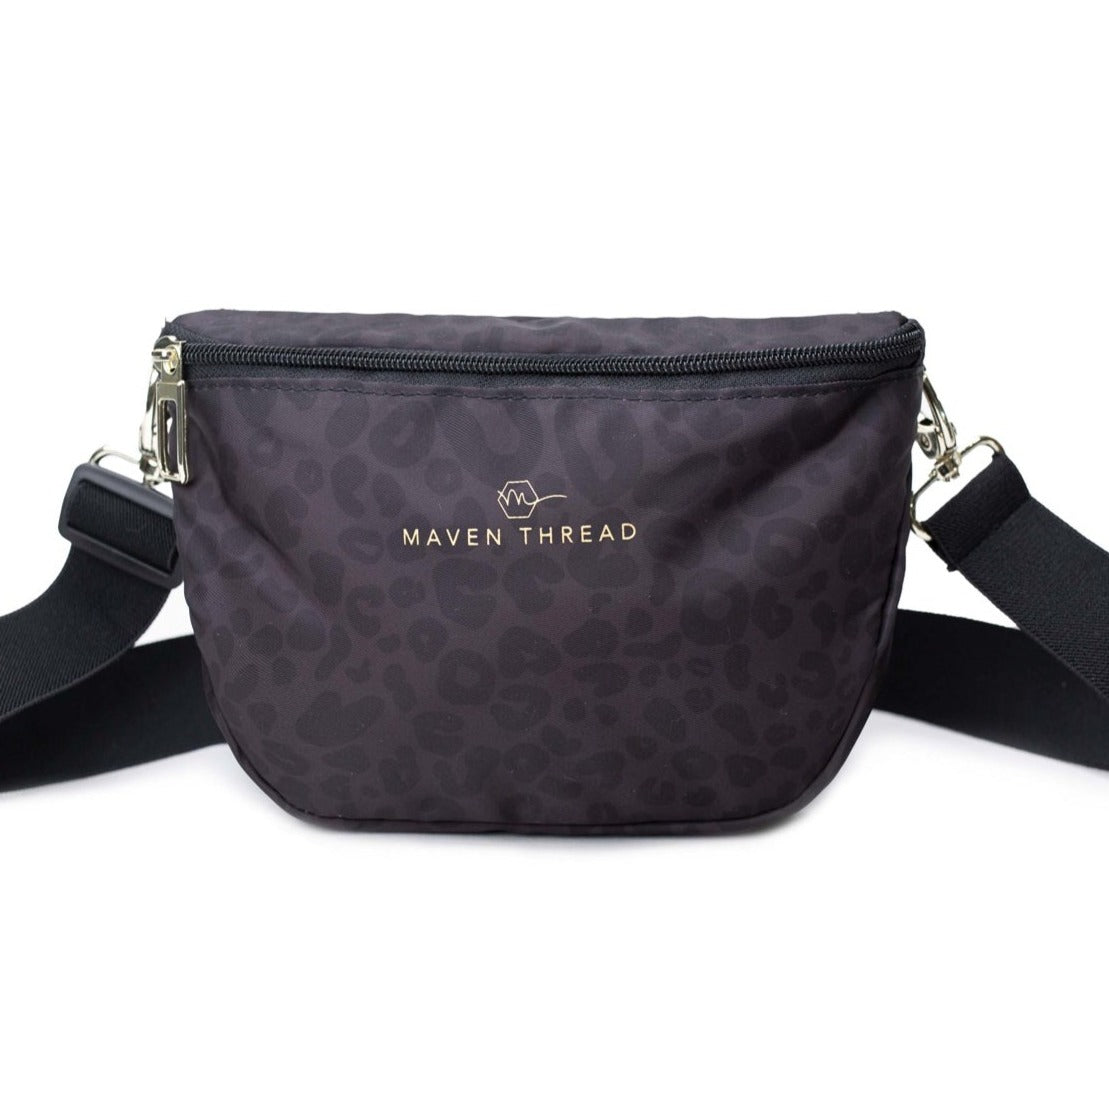 Thacker Handbags & Purses for Women | Nordstrom Rack